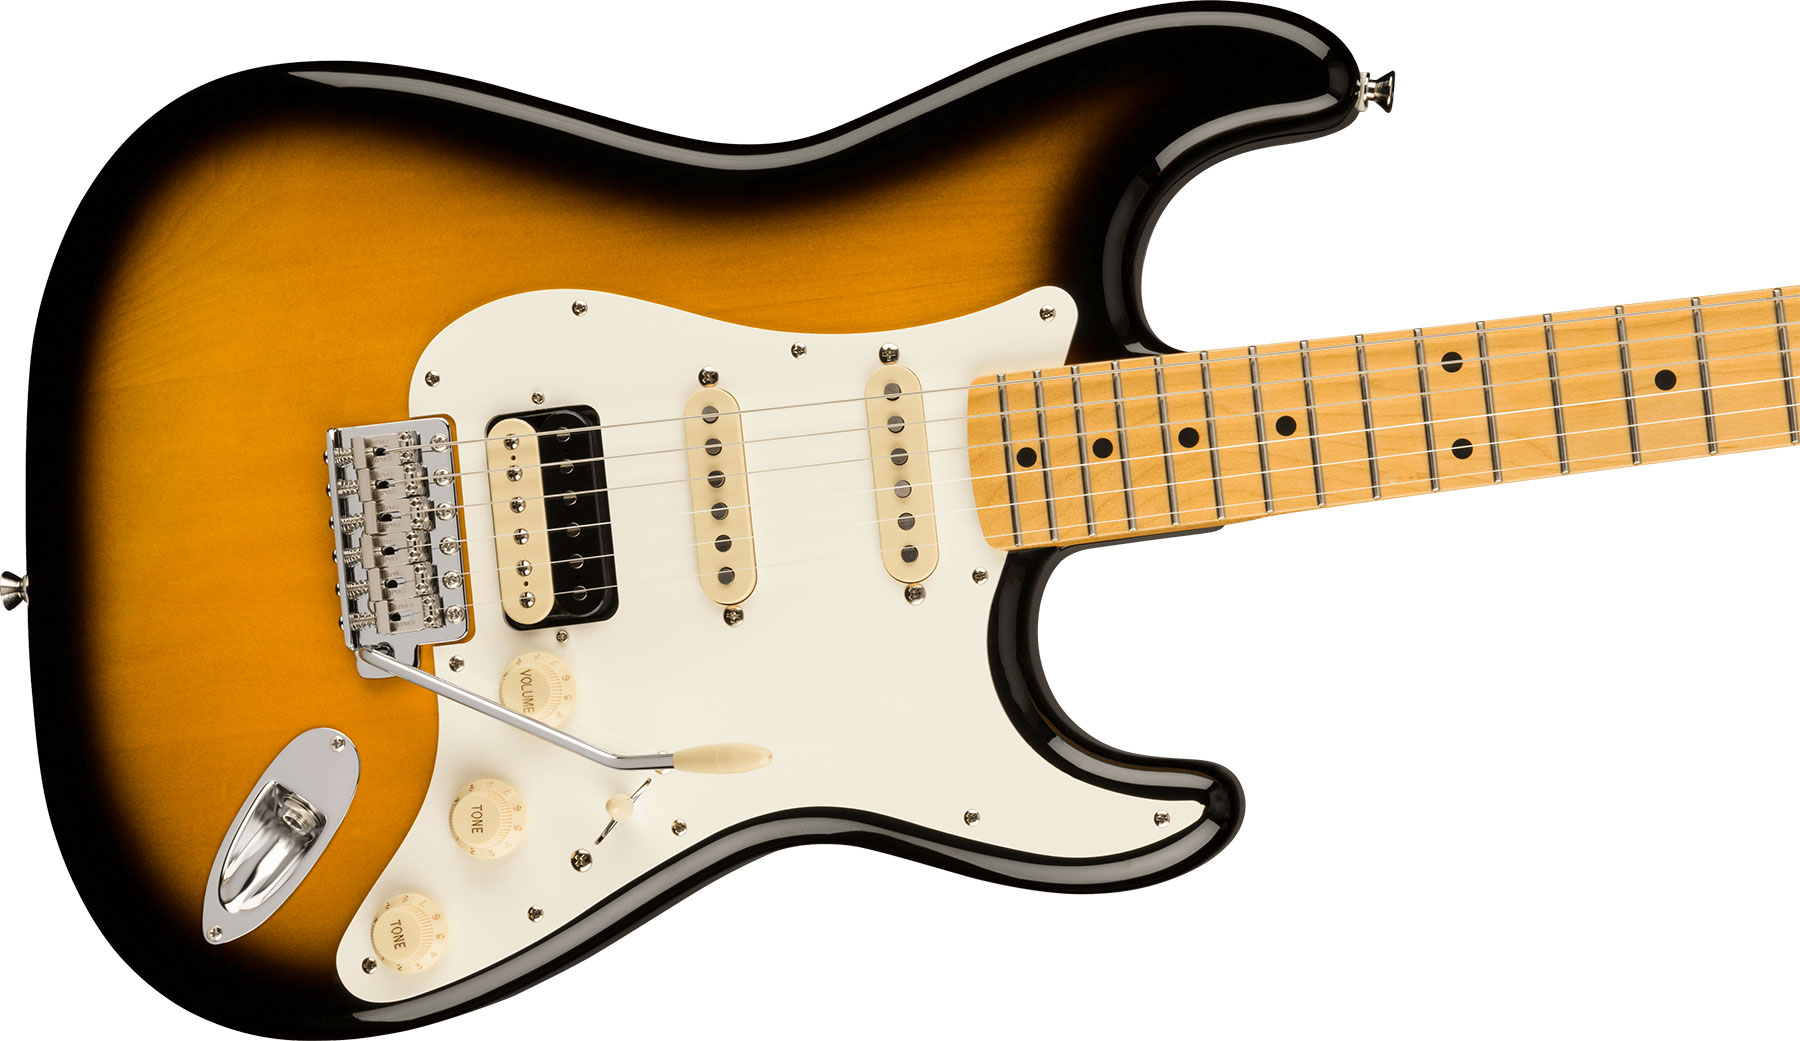 Fender Strat Jv Modified '50s Jap Hss Trem Mn - 2-color Sunburst - Str shape electric guitar - Variation 2